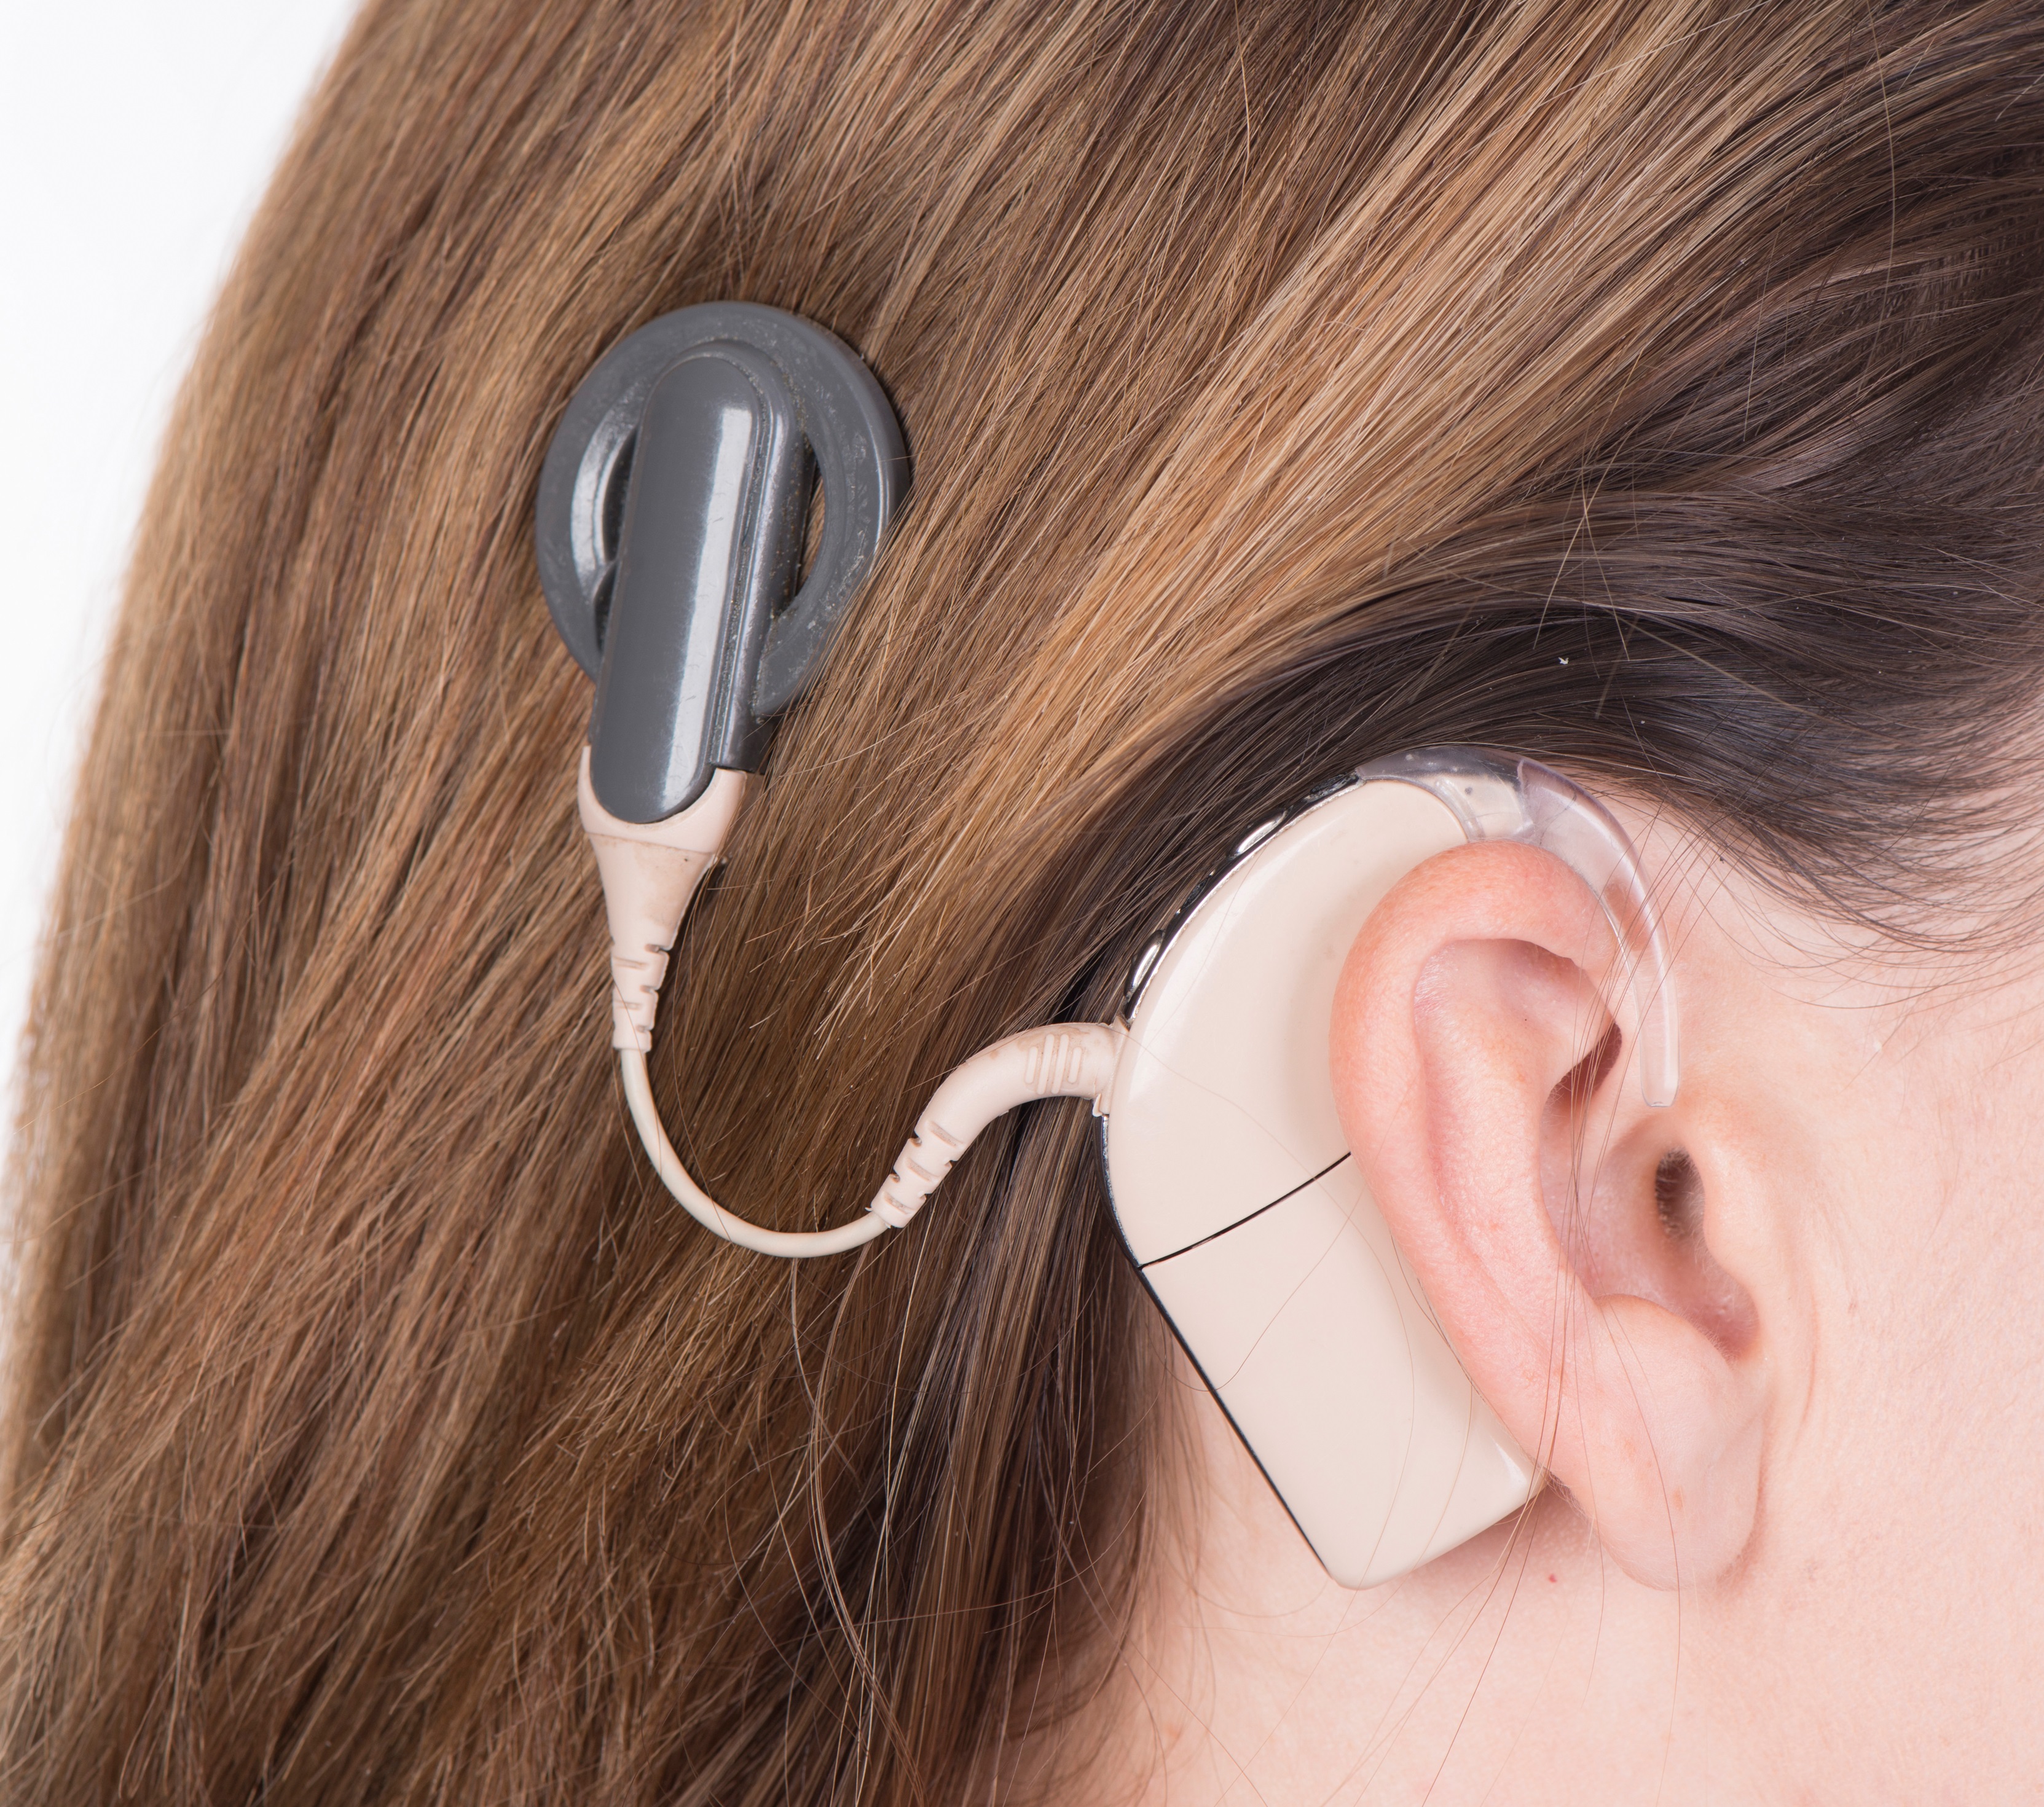 Ear hearing. Аппарат Cochlear кохлеарный. Слуховой аппарат кохлеарный имплант. Кохлеарный имплант Кохлер. Аппарат для глухих кохлеарная имплантация.